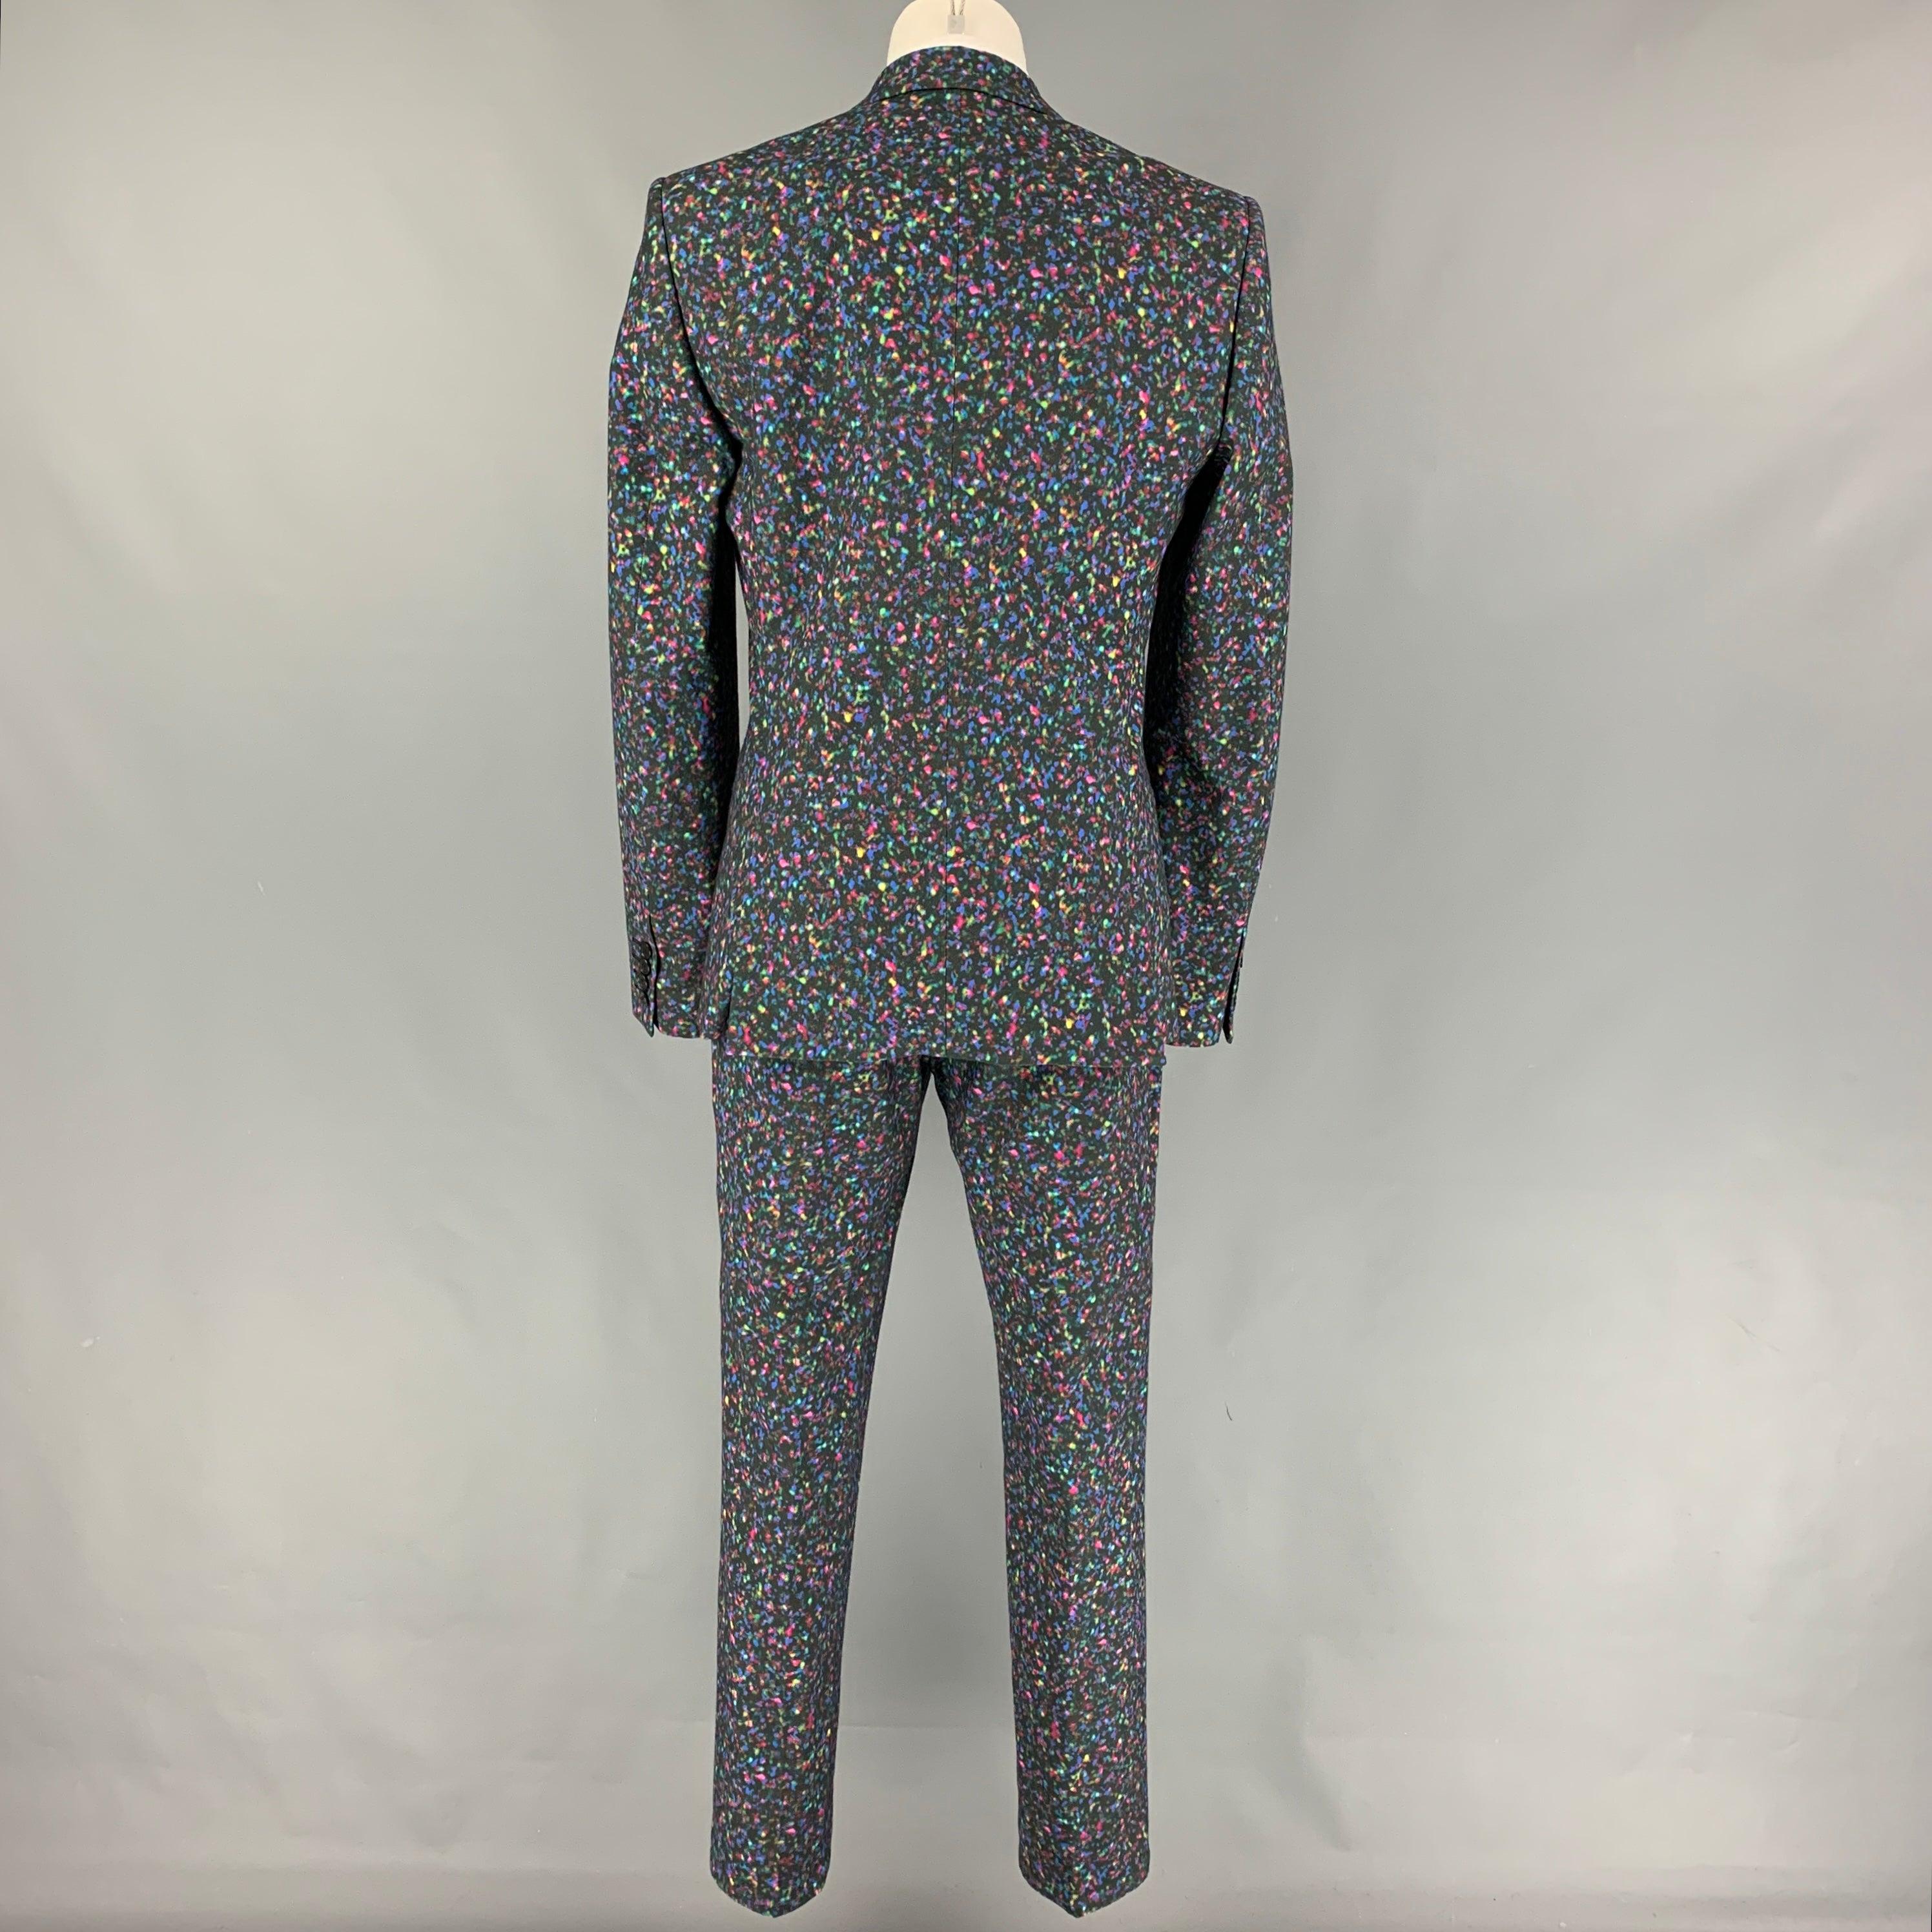 Men's CALVIN KLEIN COLLECTION Size 34 Multi-Color Print Cotton Notch Lapel Suit For Sale